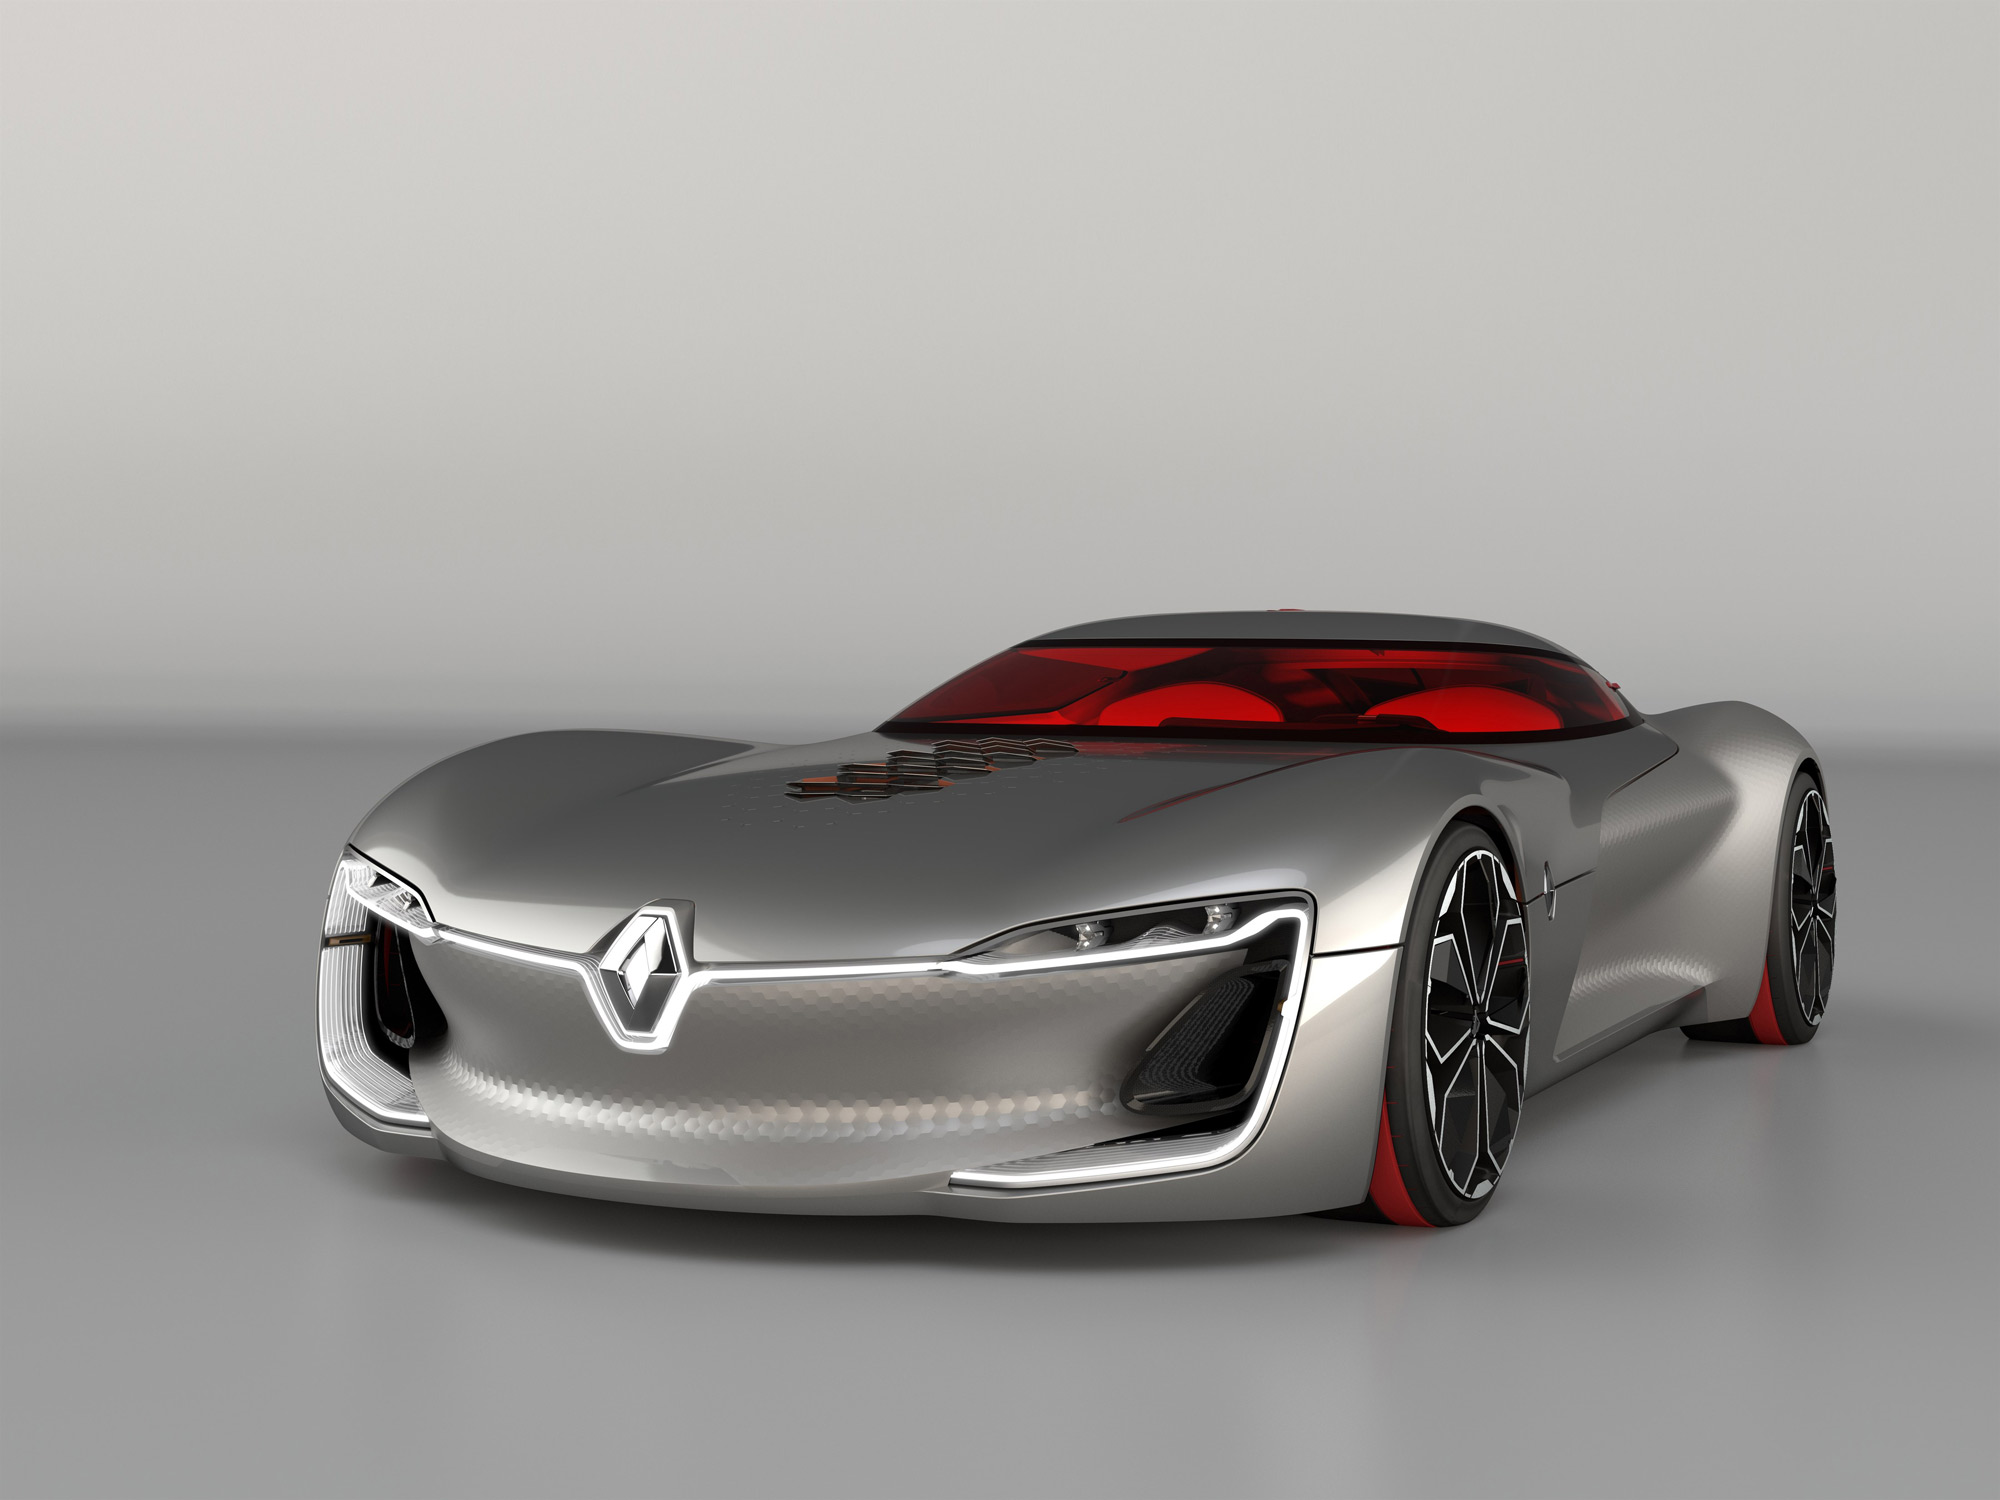 Renault Trezor autonomous supercar